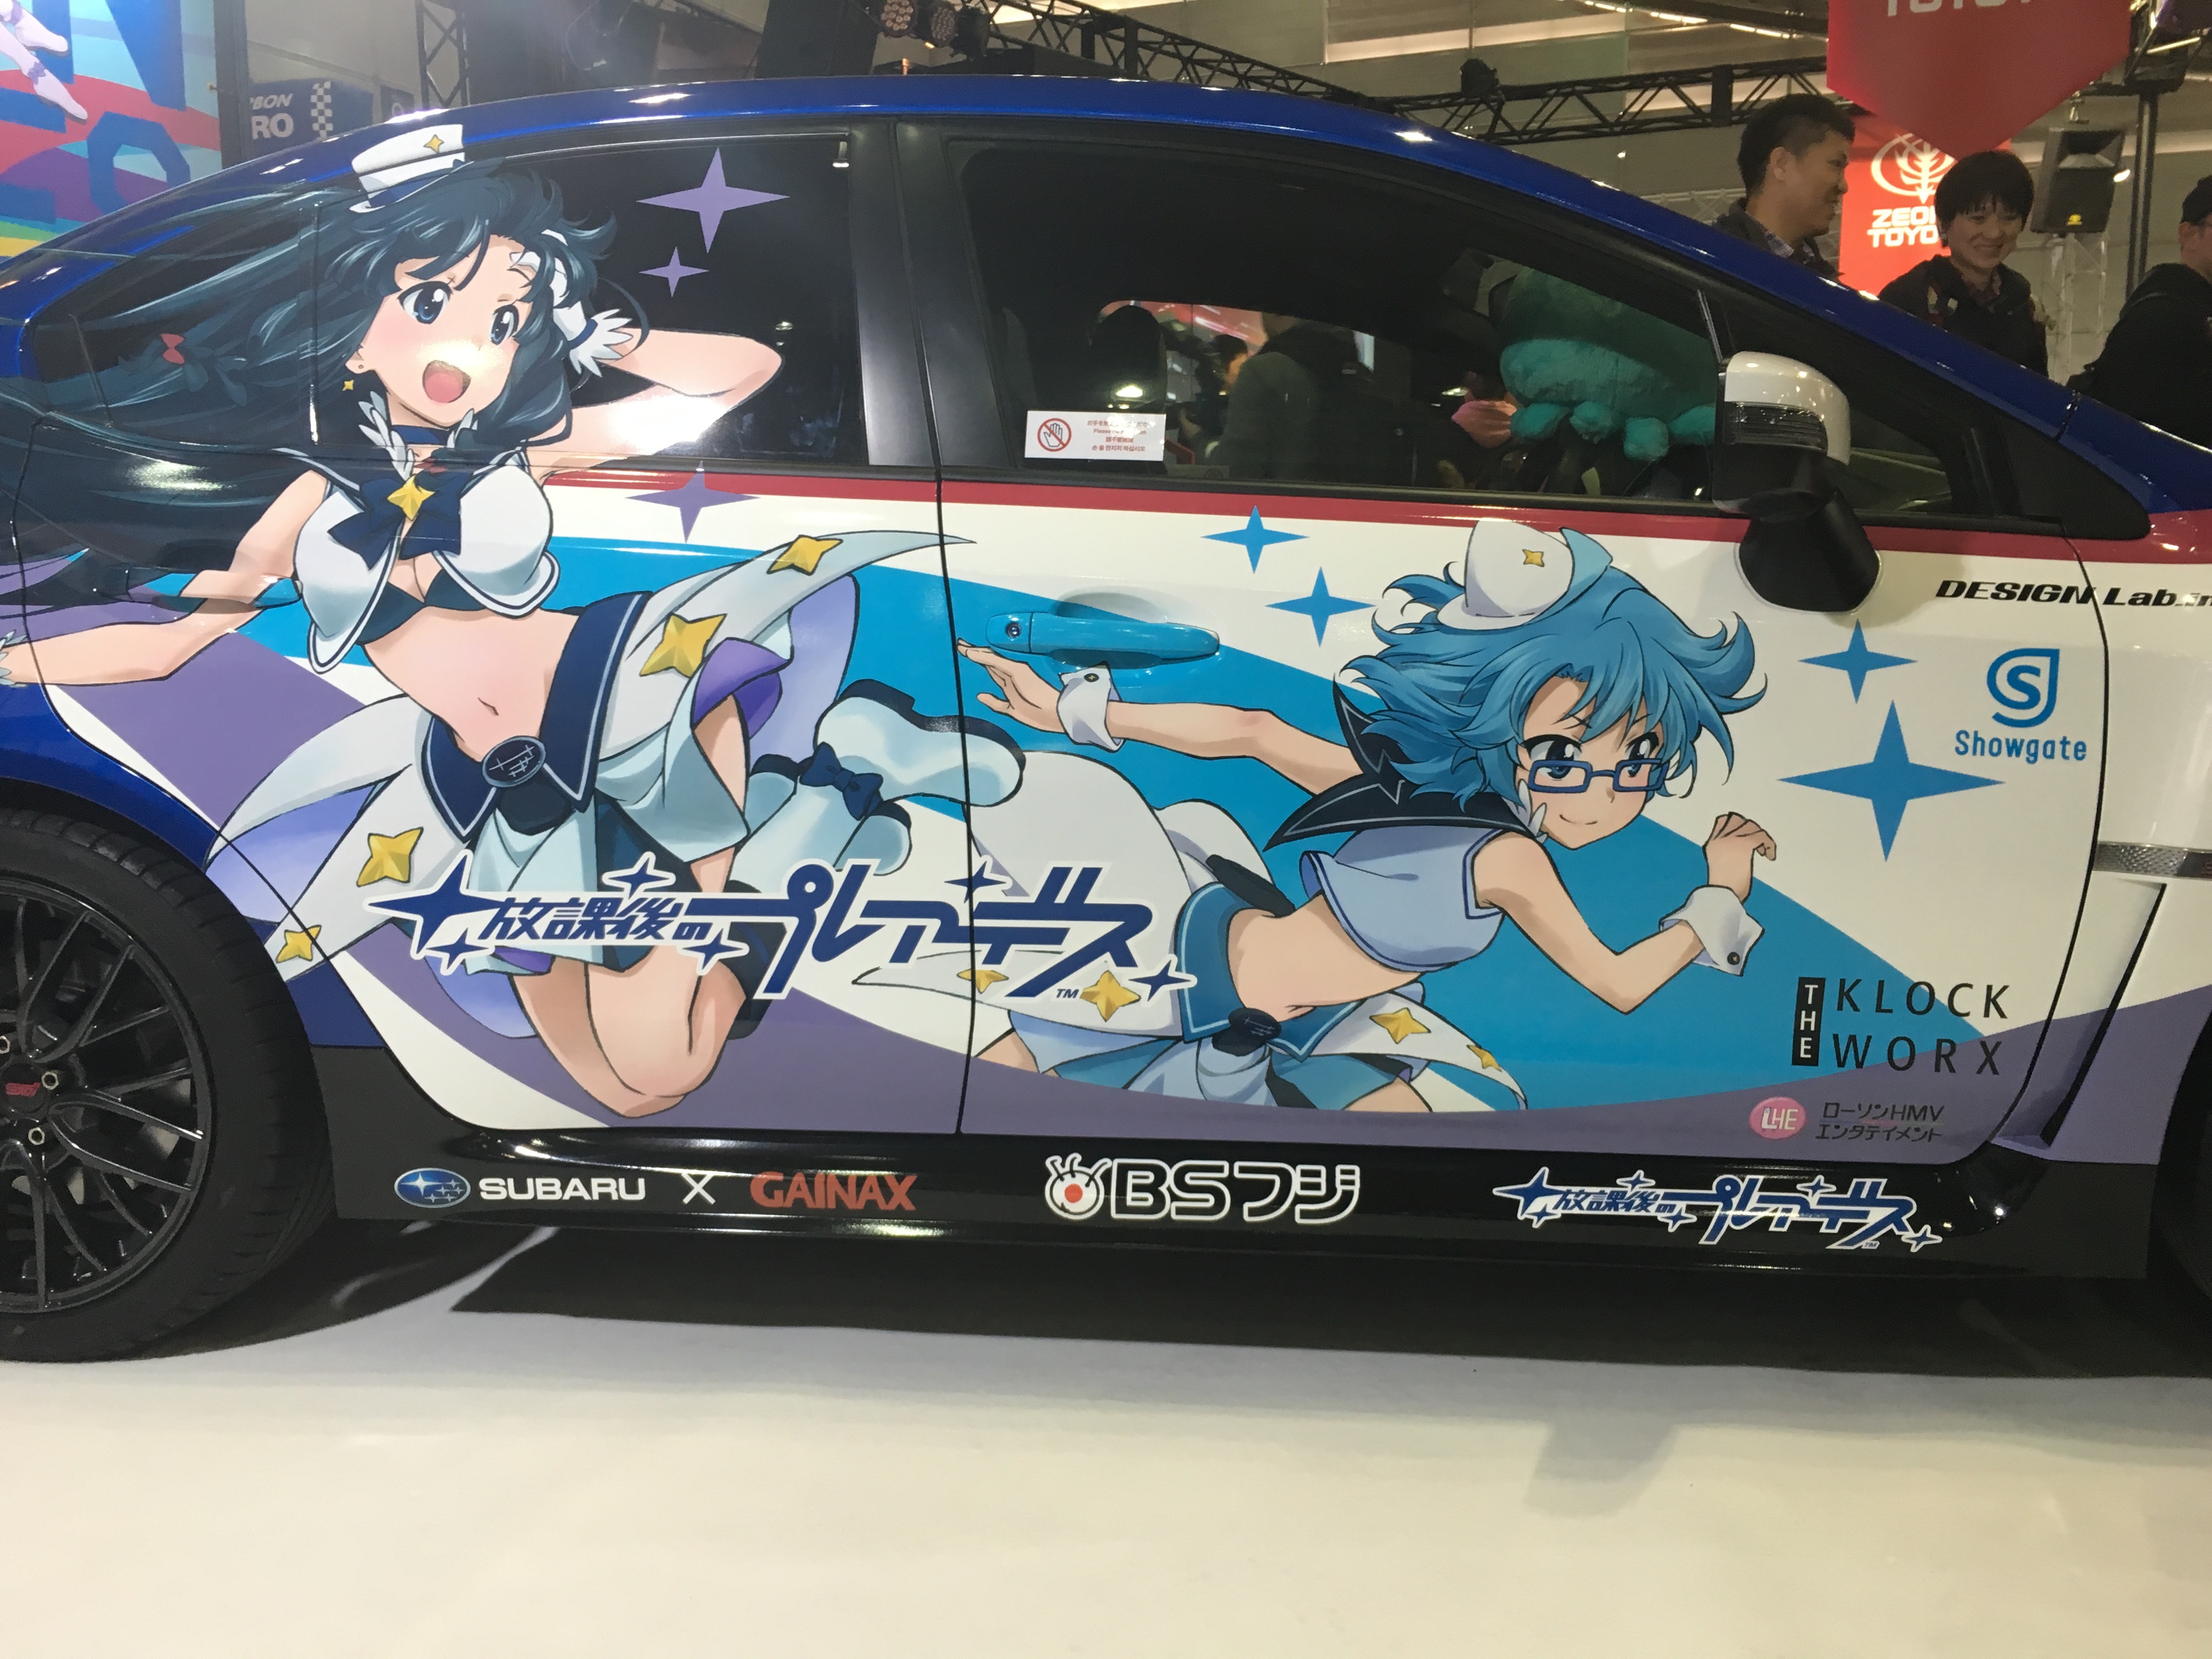 A hivatalos Subaru anime megkapta a saját autóját.